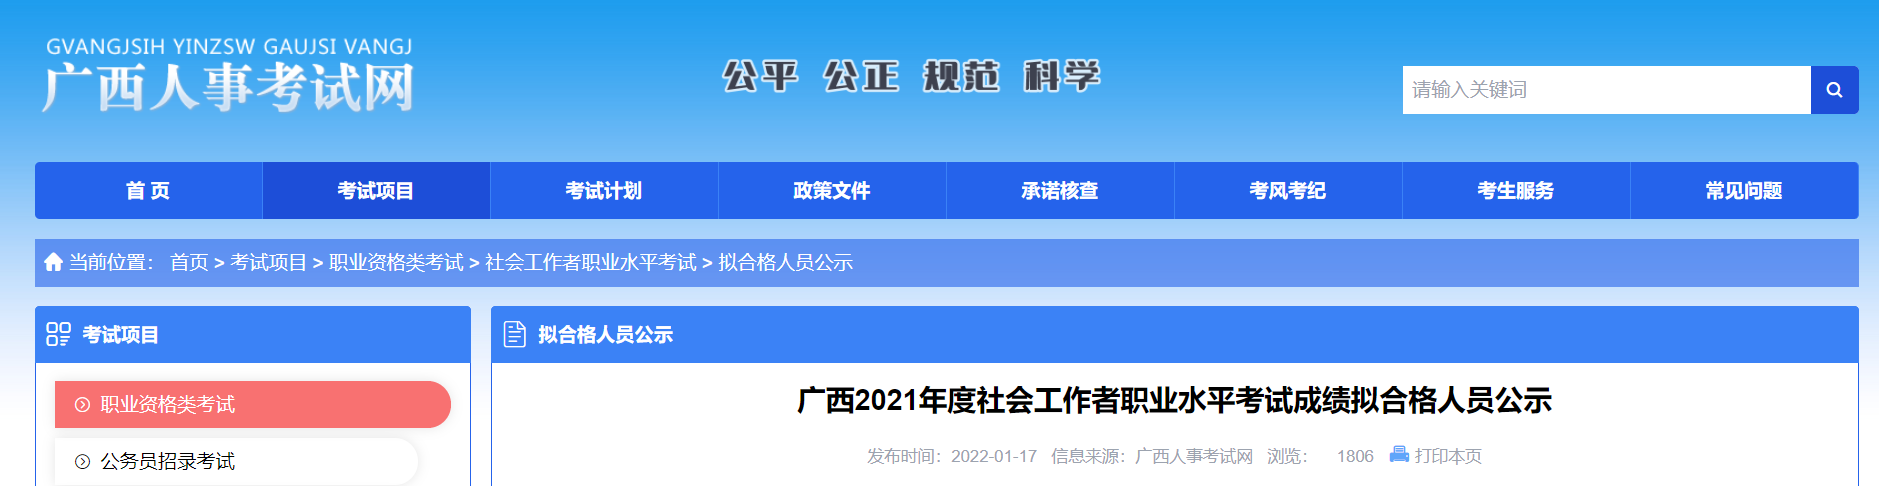 2021年广西社会工作者职业水平考试成绩拟合格人员公示